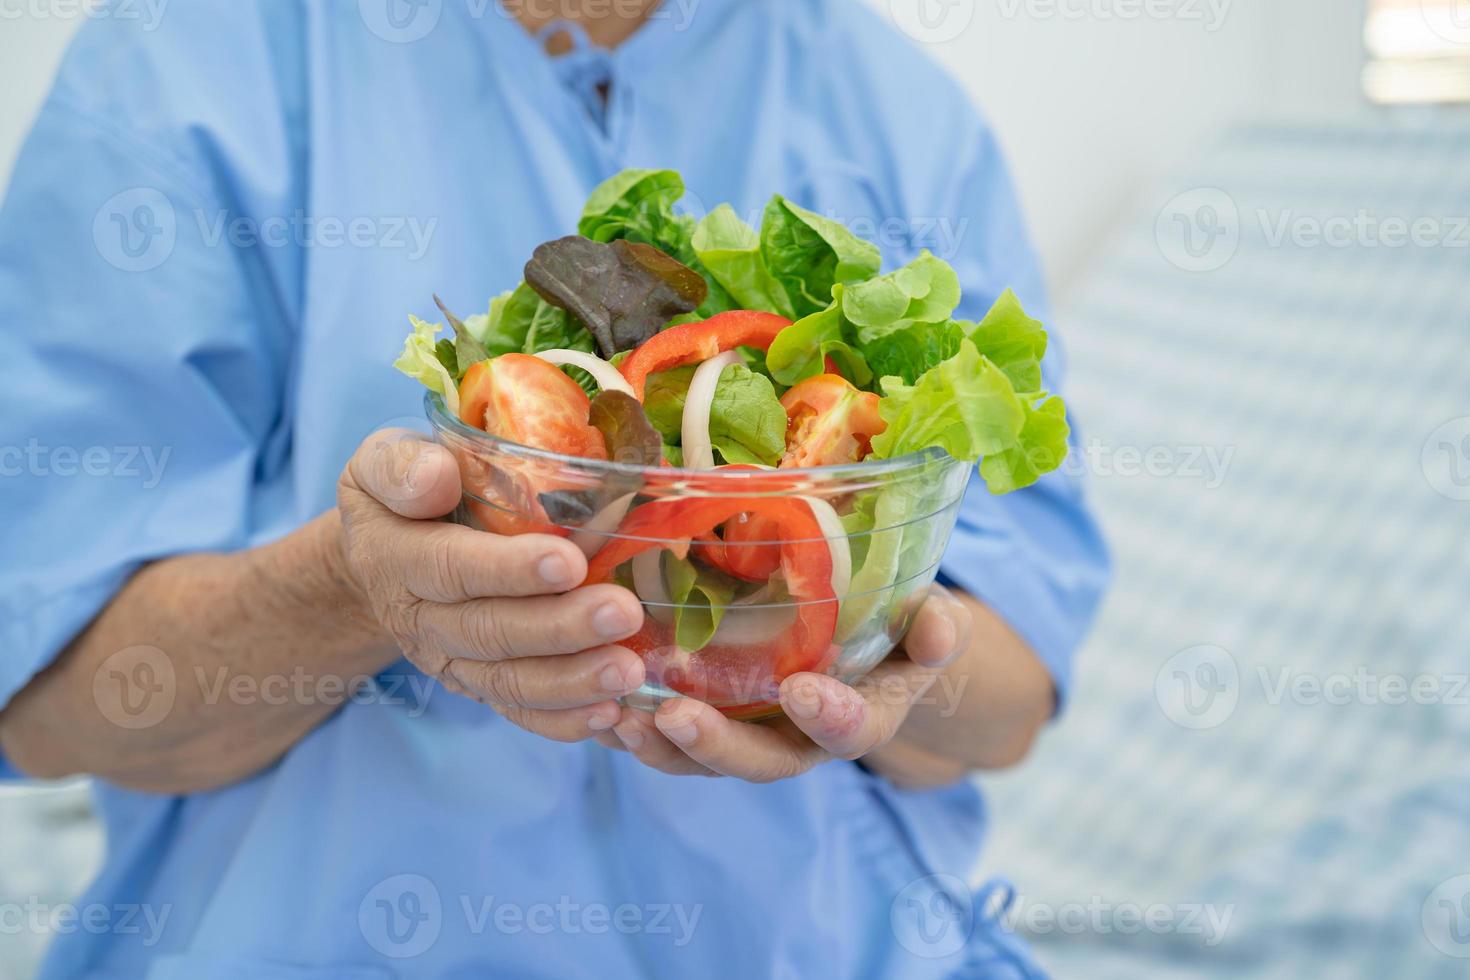 asiatisk senior eller äldre gammal damkvinna som äter frukost vegetabilisk hälsosam mat med hopp och lycklig medan du sitter och är hungrig på sängen på sjukhus. foto